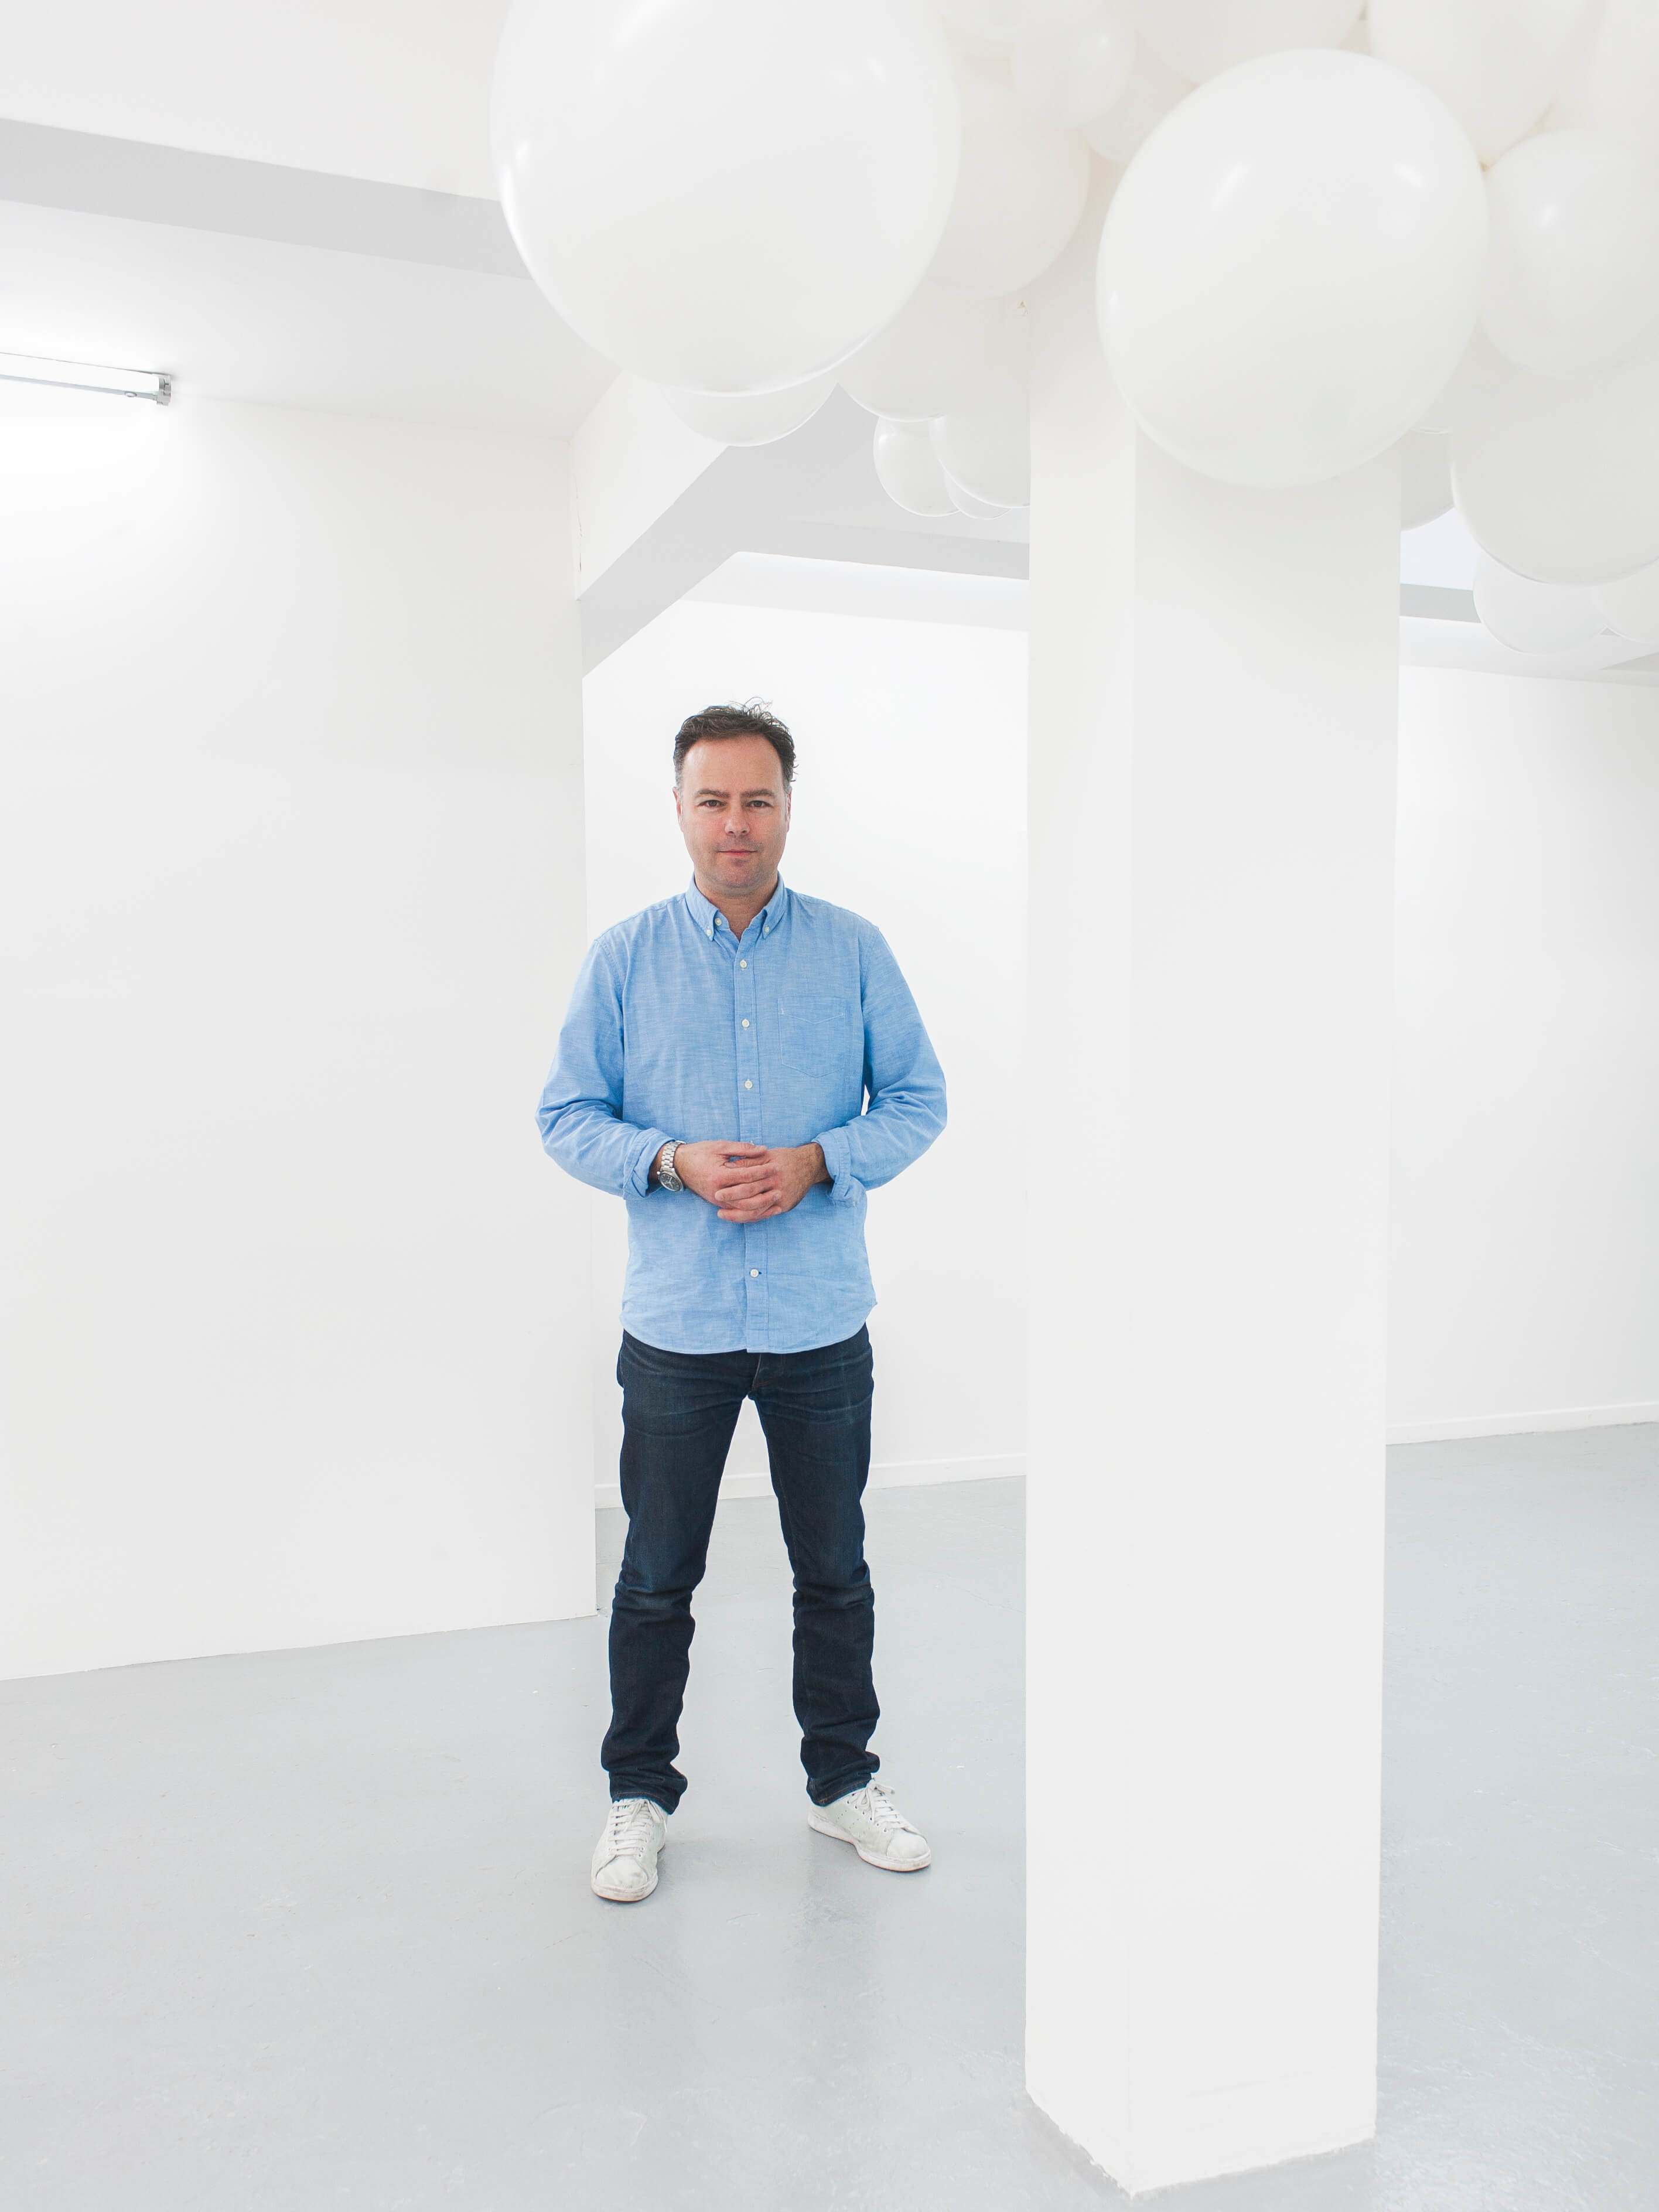 O artista Charles Petillon é conhecido por suas obras de arte usando balões. Sua instalação, usando tecidos Sunbrella foi apresentada na mostra SuperDesign em Milão, em 2017.